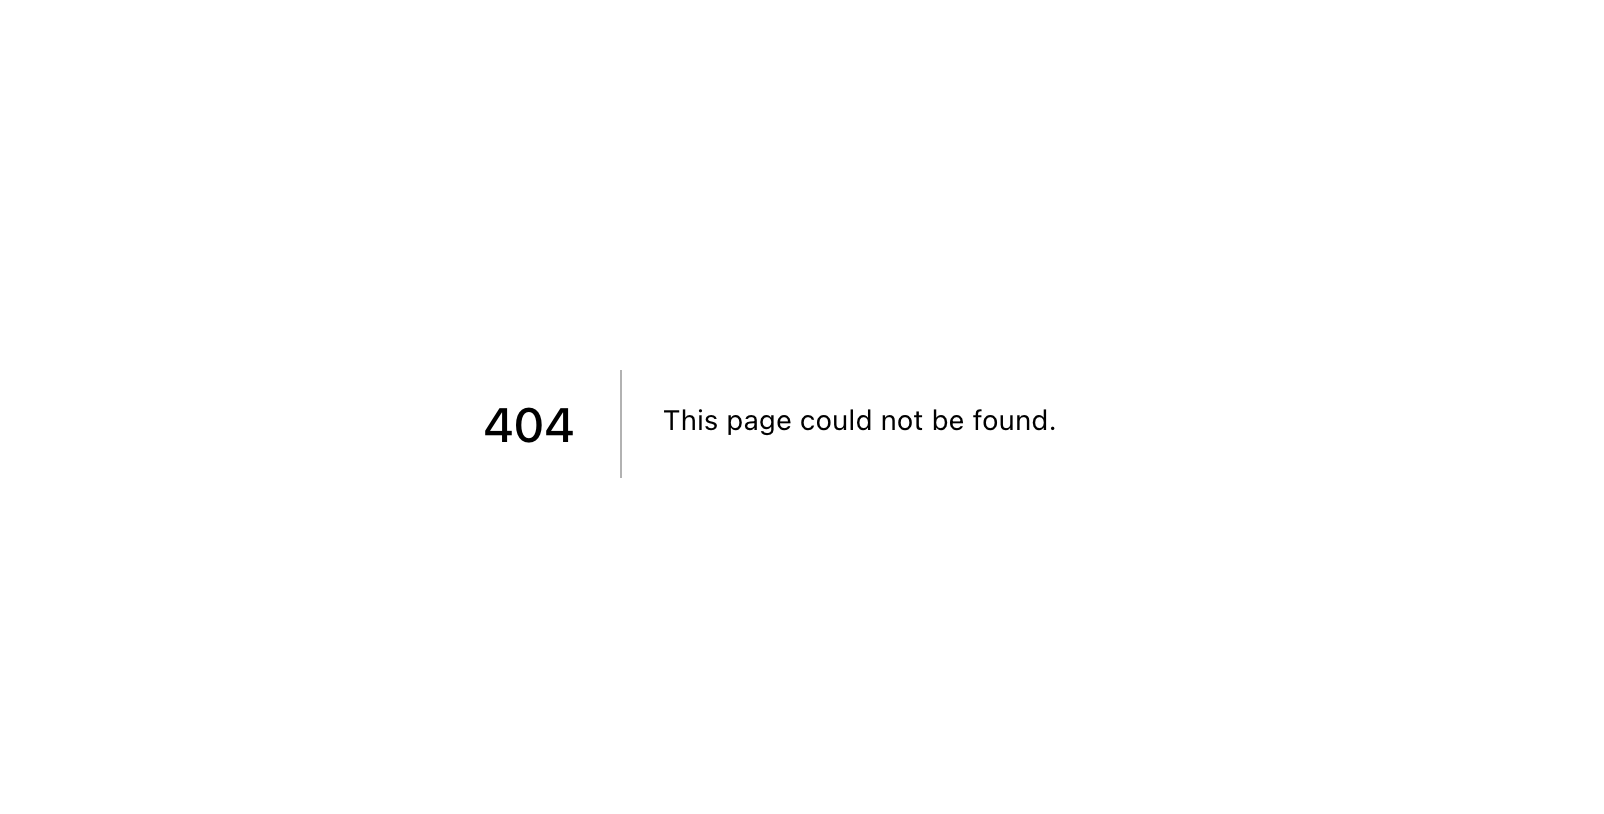 Default 404 error page in next.js